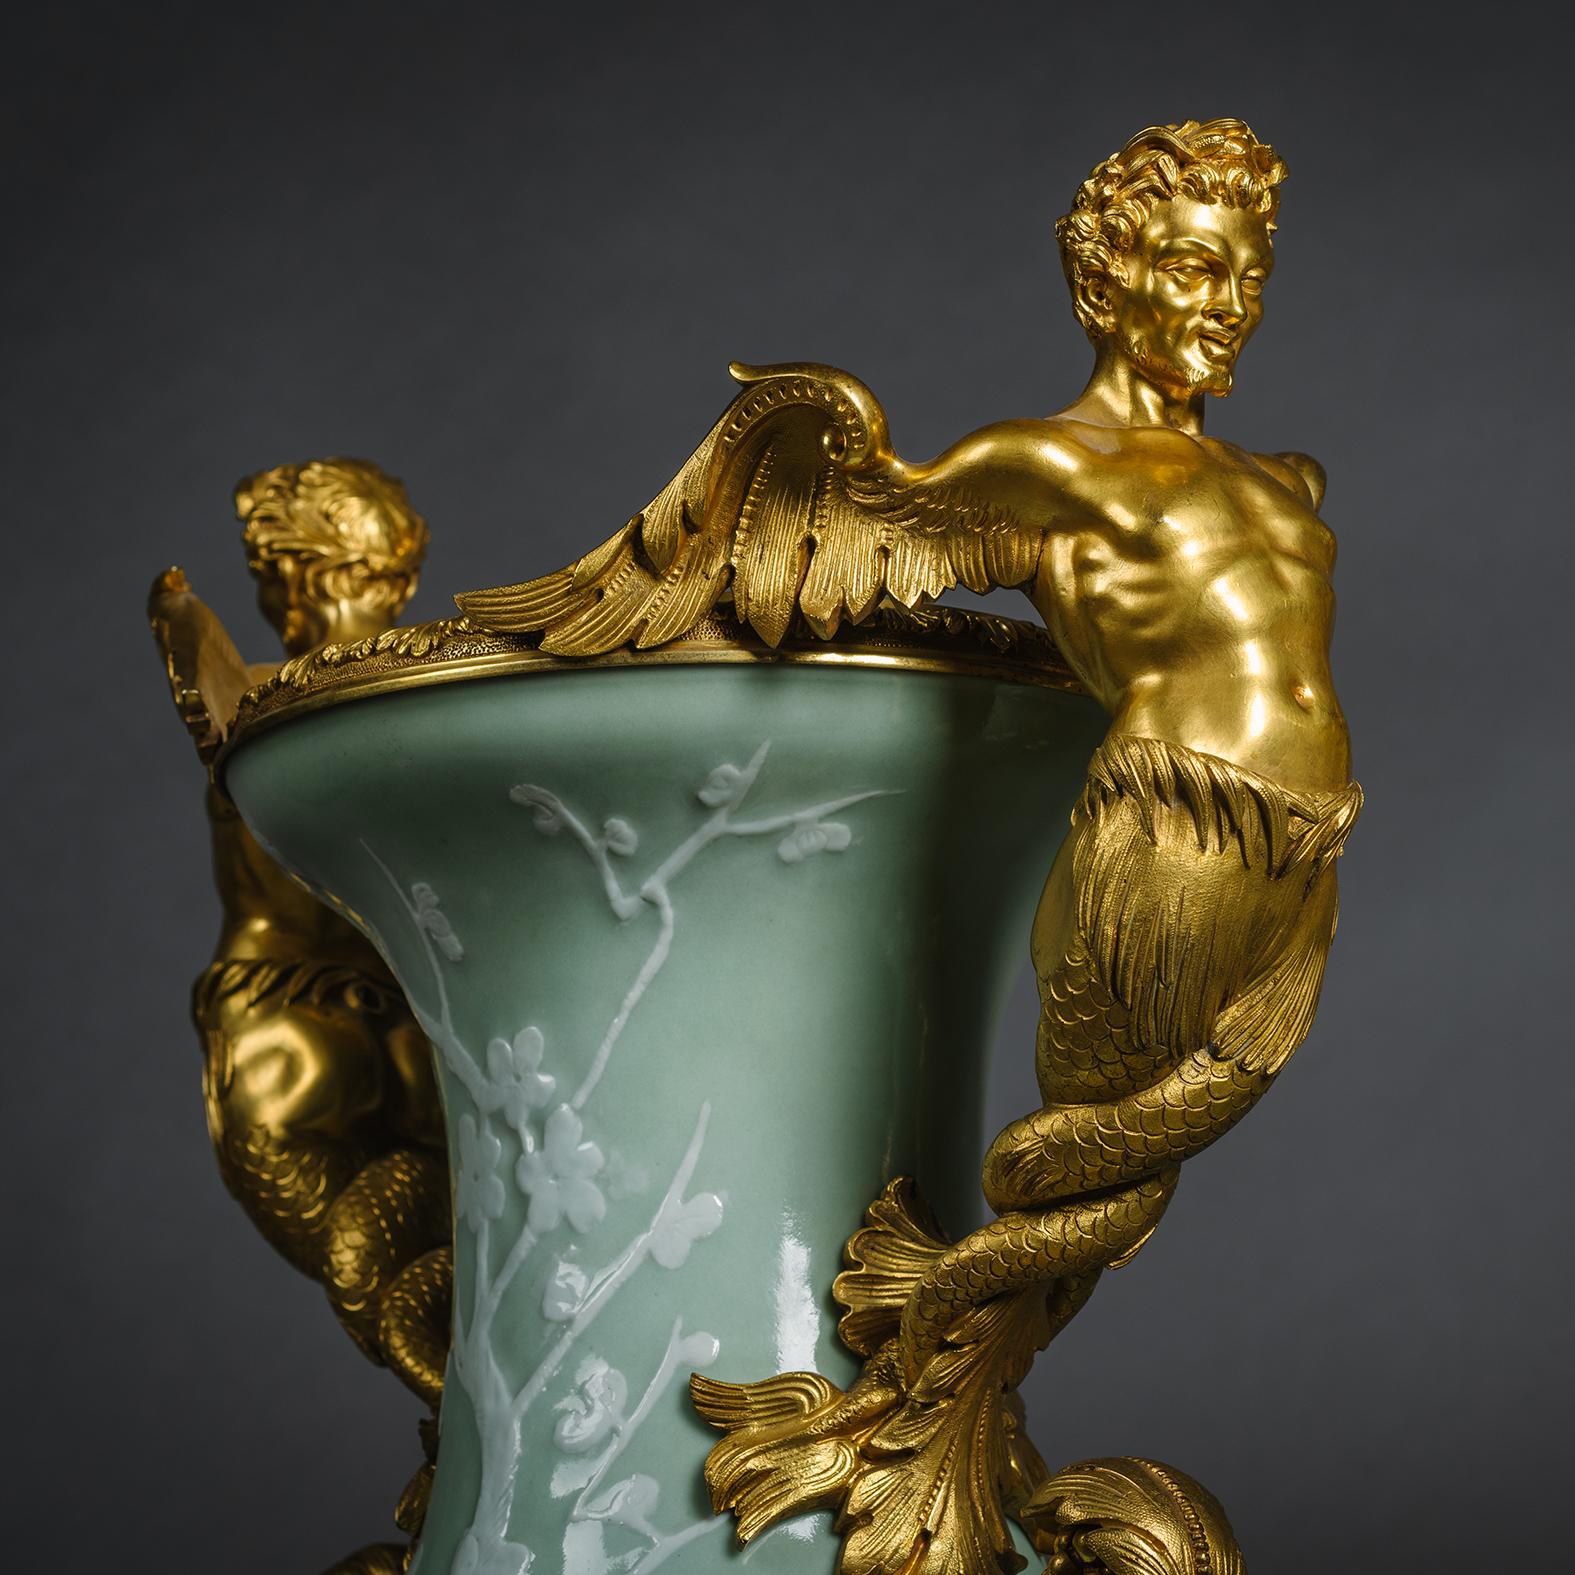 Zwei große chinesische Vasen aus vergoldeter Bronze mit Celadon-Grundierung und Porzellan mit Schlickerdekor.

Diese Vasen aus chinesischem Celadon-Porzellan aus der späten Quing-Dynastie sind mit Weidenbäumen und Prunusblüten verziert. Die fein